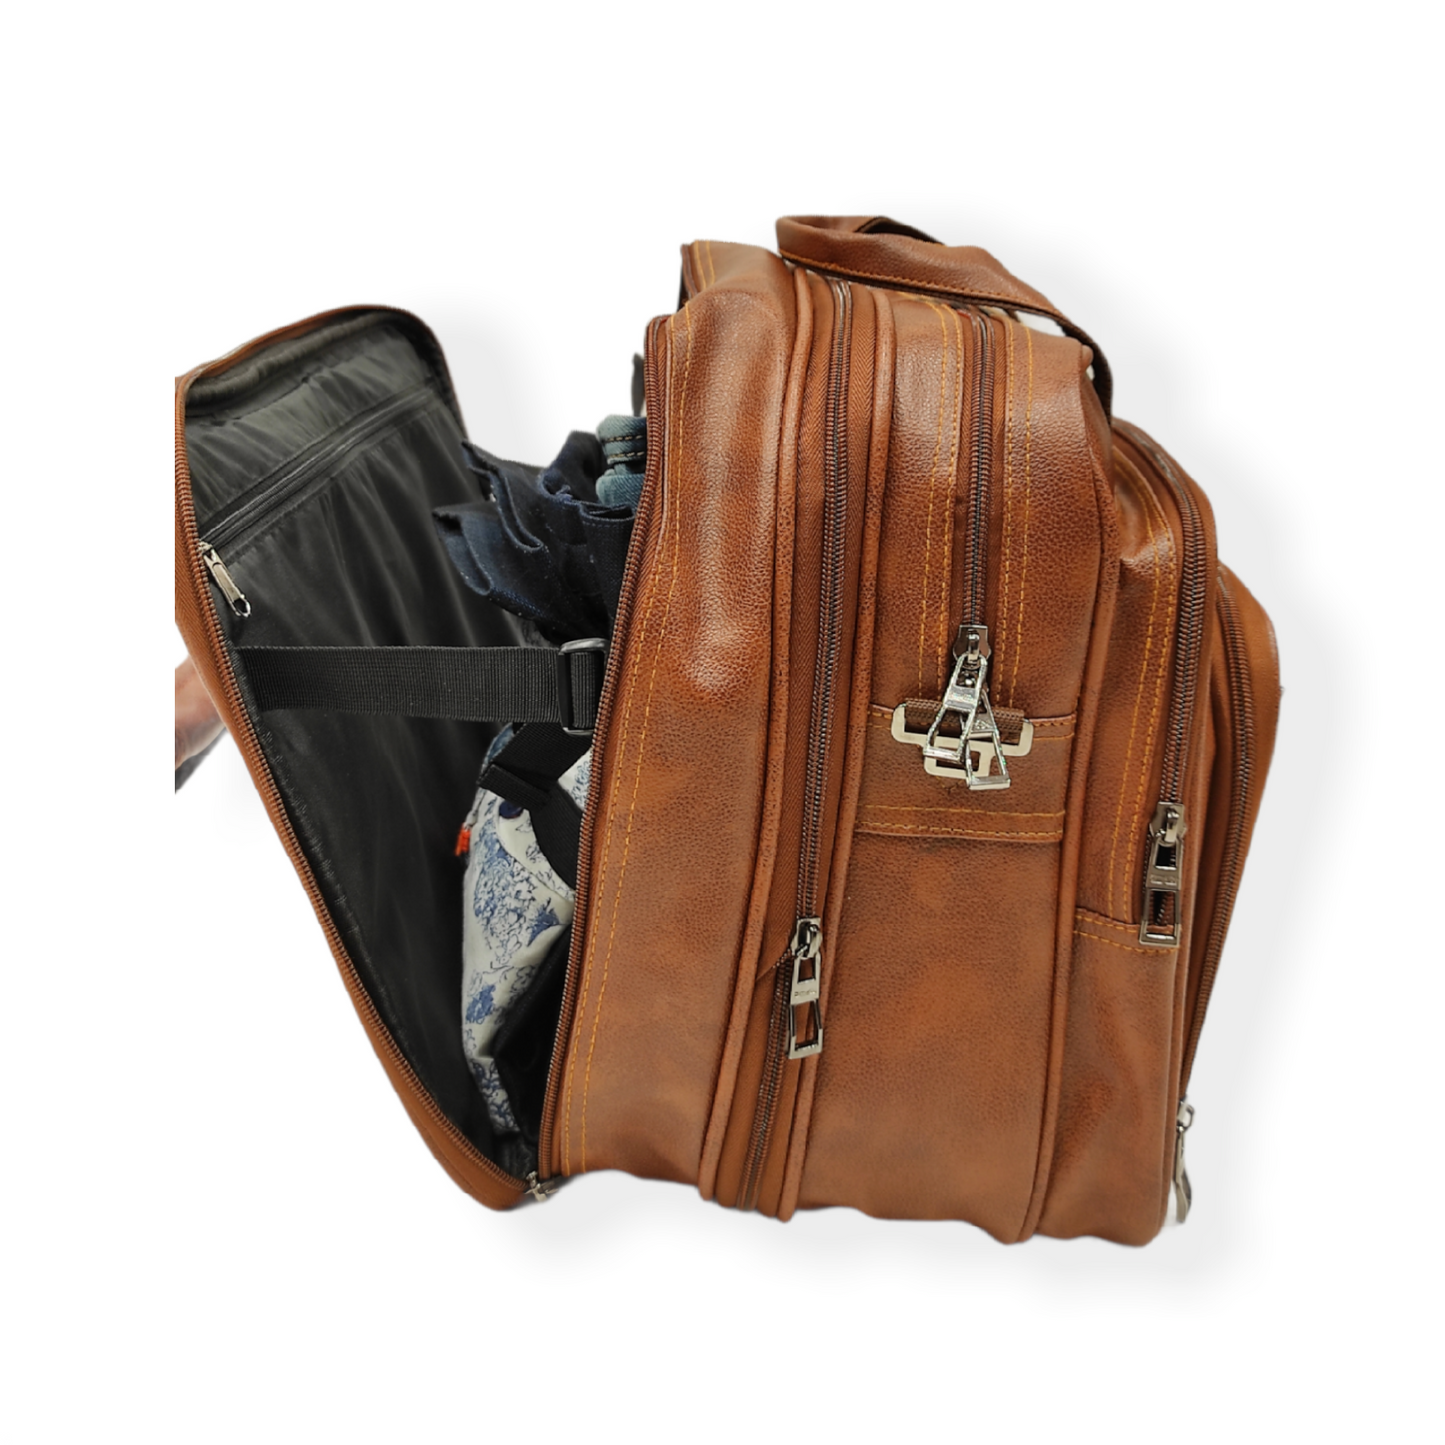 Arihant bag center's laptop bag,travel bag